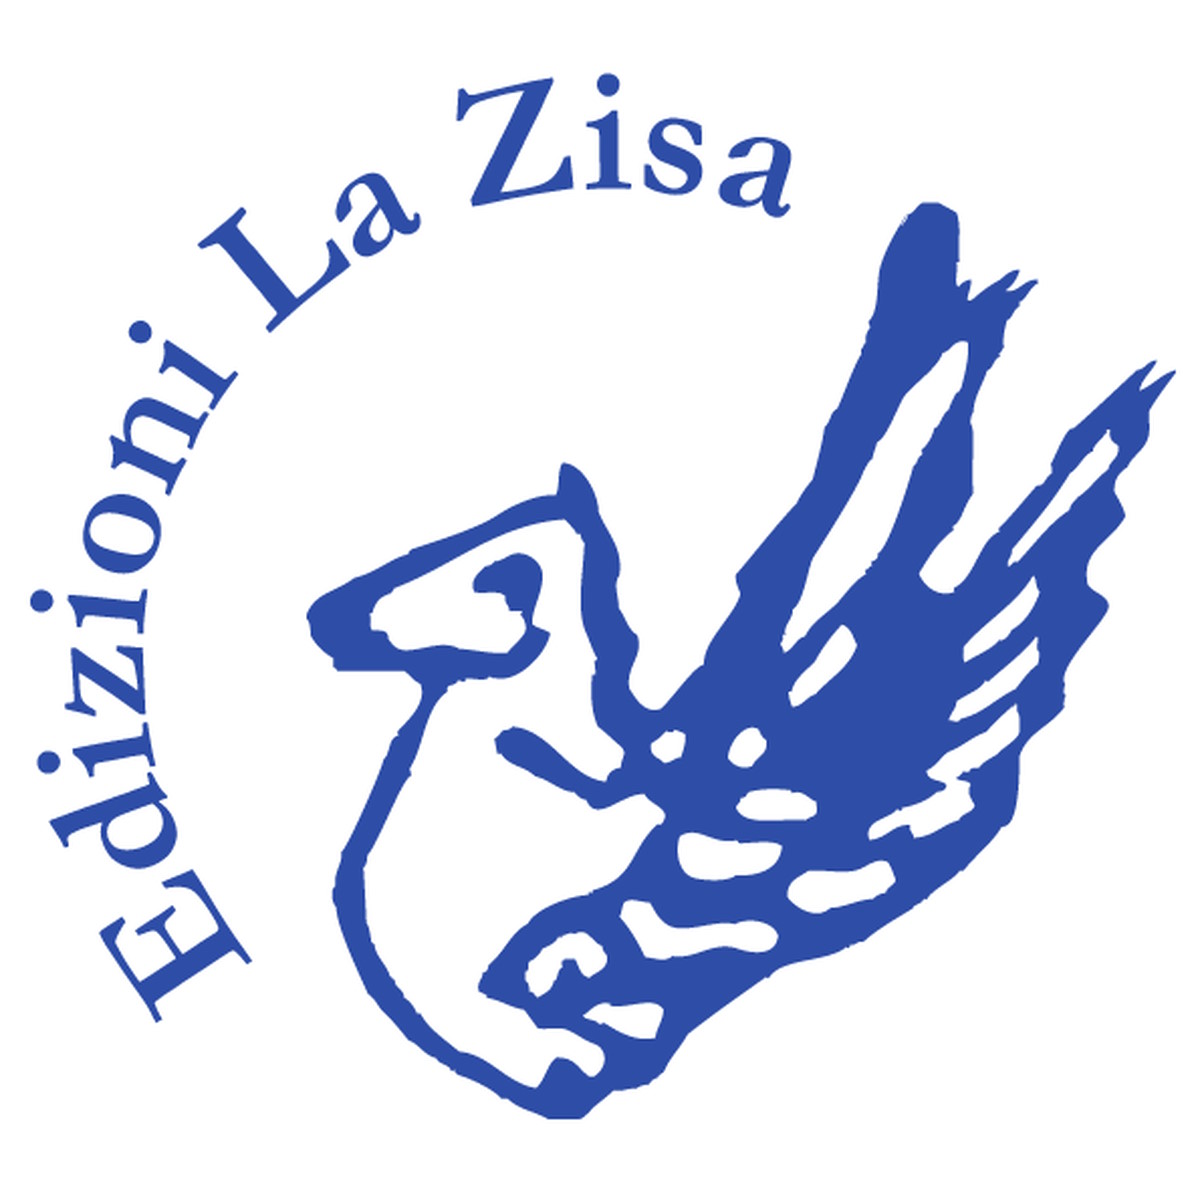 Edizioni La Zisa, 1988-2023: trentacinque anni dalla parte sbagliata (in trenta libri o quasi)